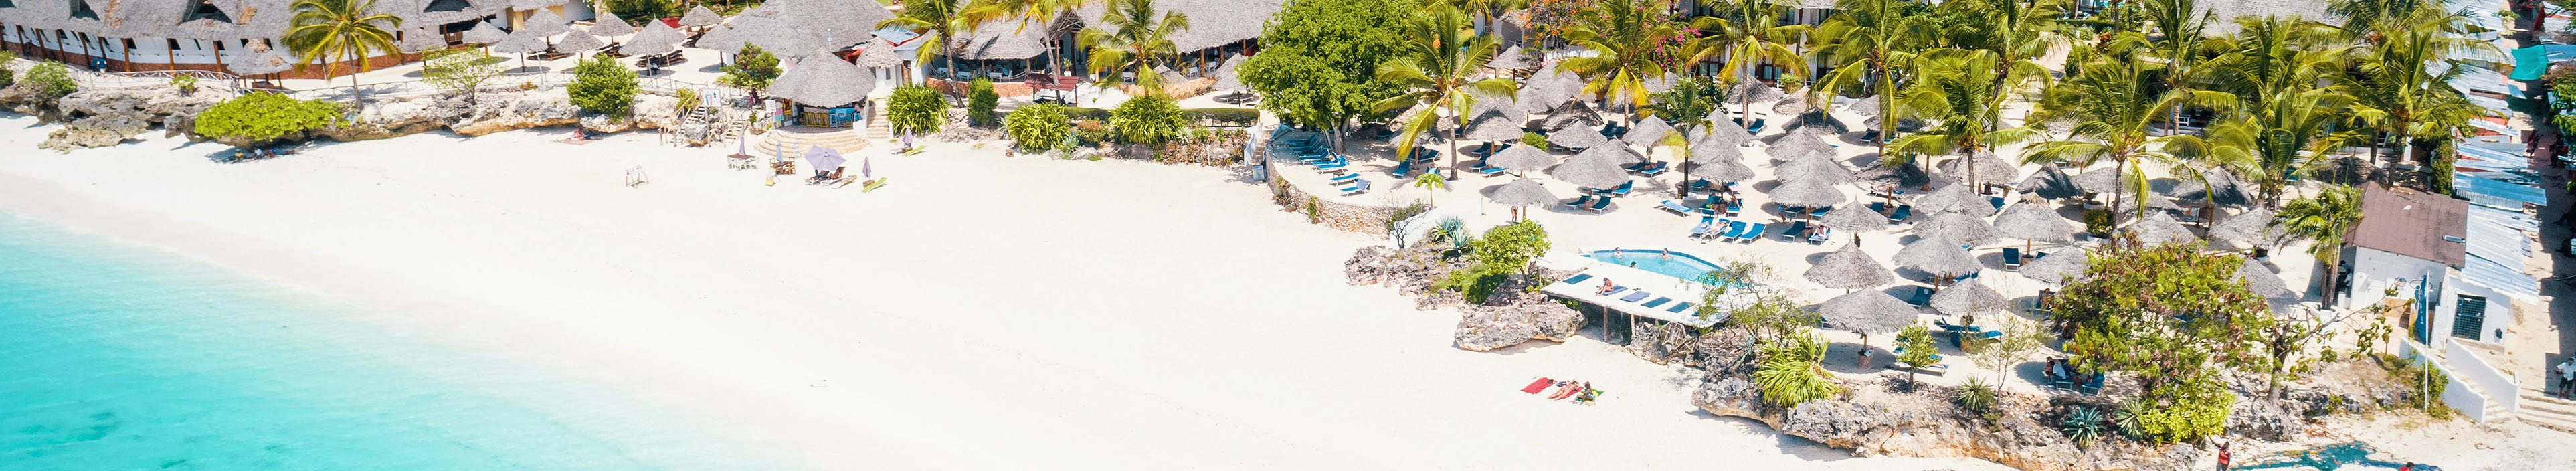 Strand und Hotels auf Sansibar